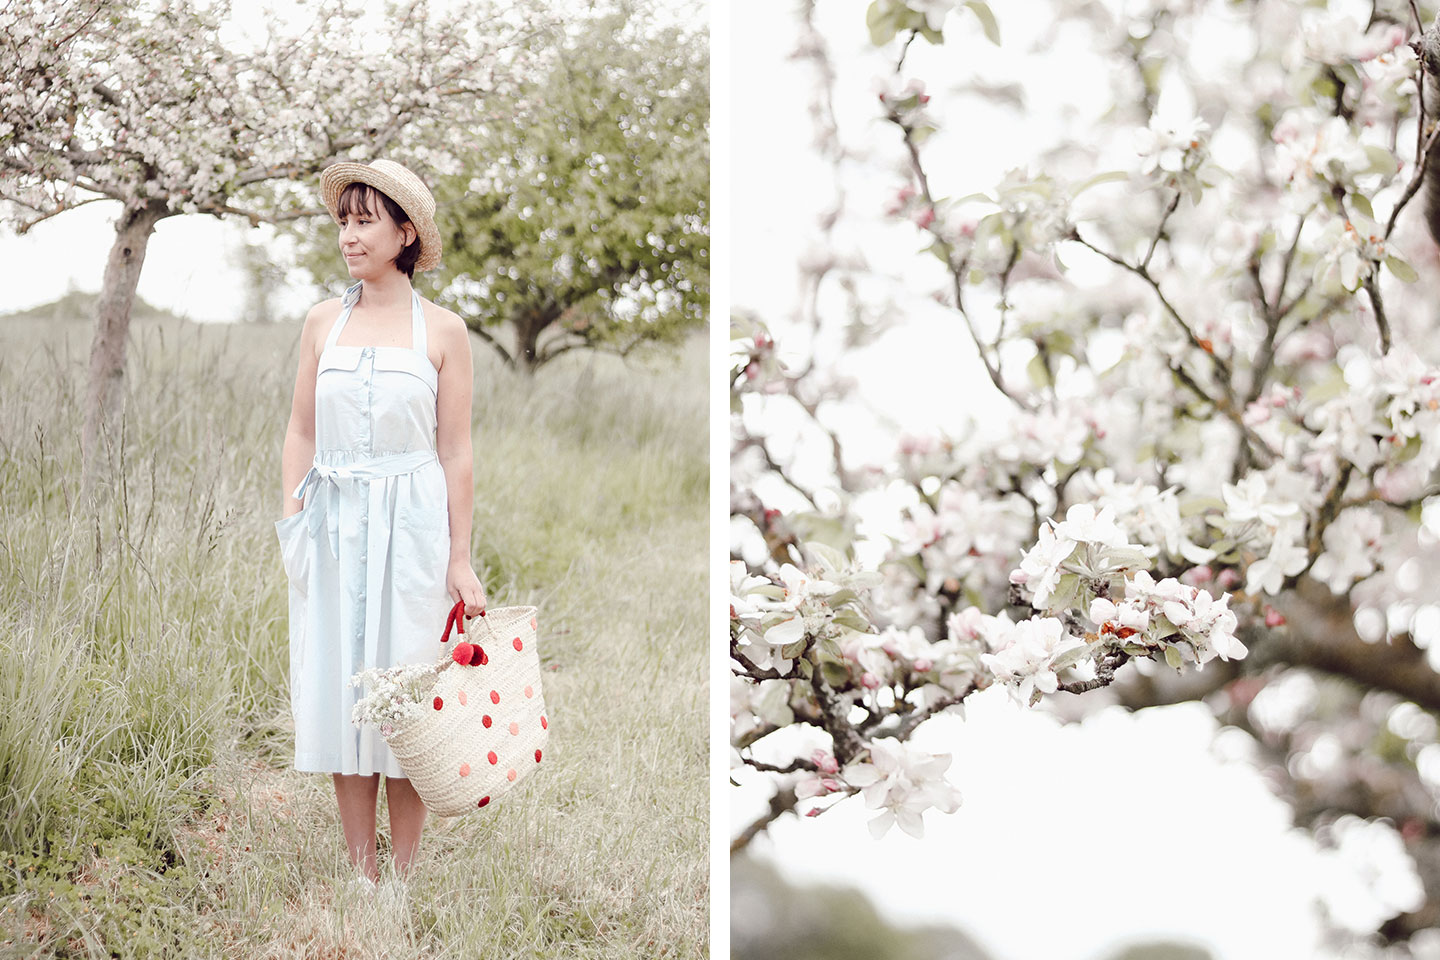 Aujourd'hui je vous retrouve avec un petit look estival et confortable avec cette petite robe rétro aux milieu des pommiers en fleurs d'Oléron. - Cliquez pour découvrir l'article